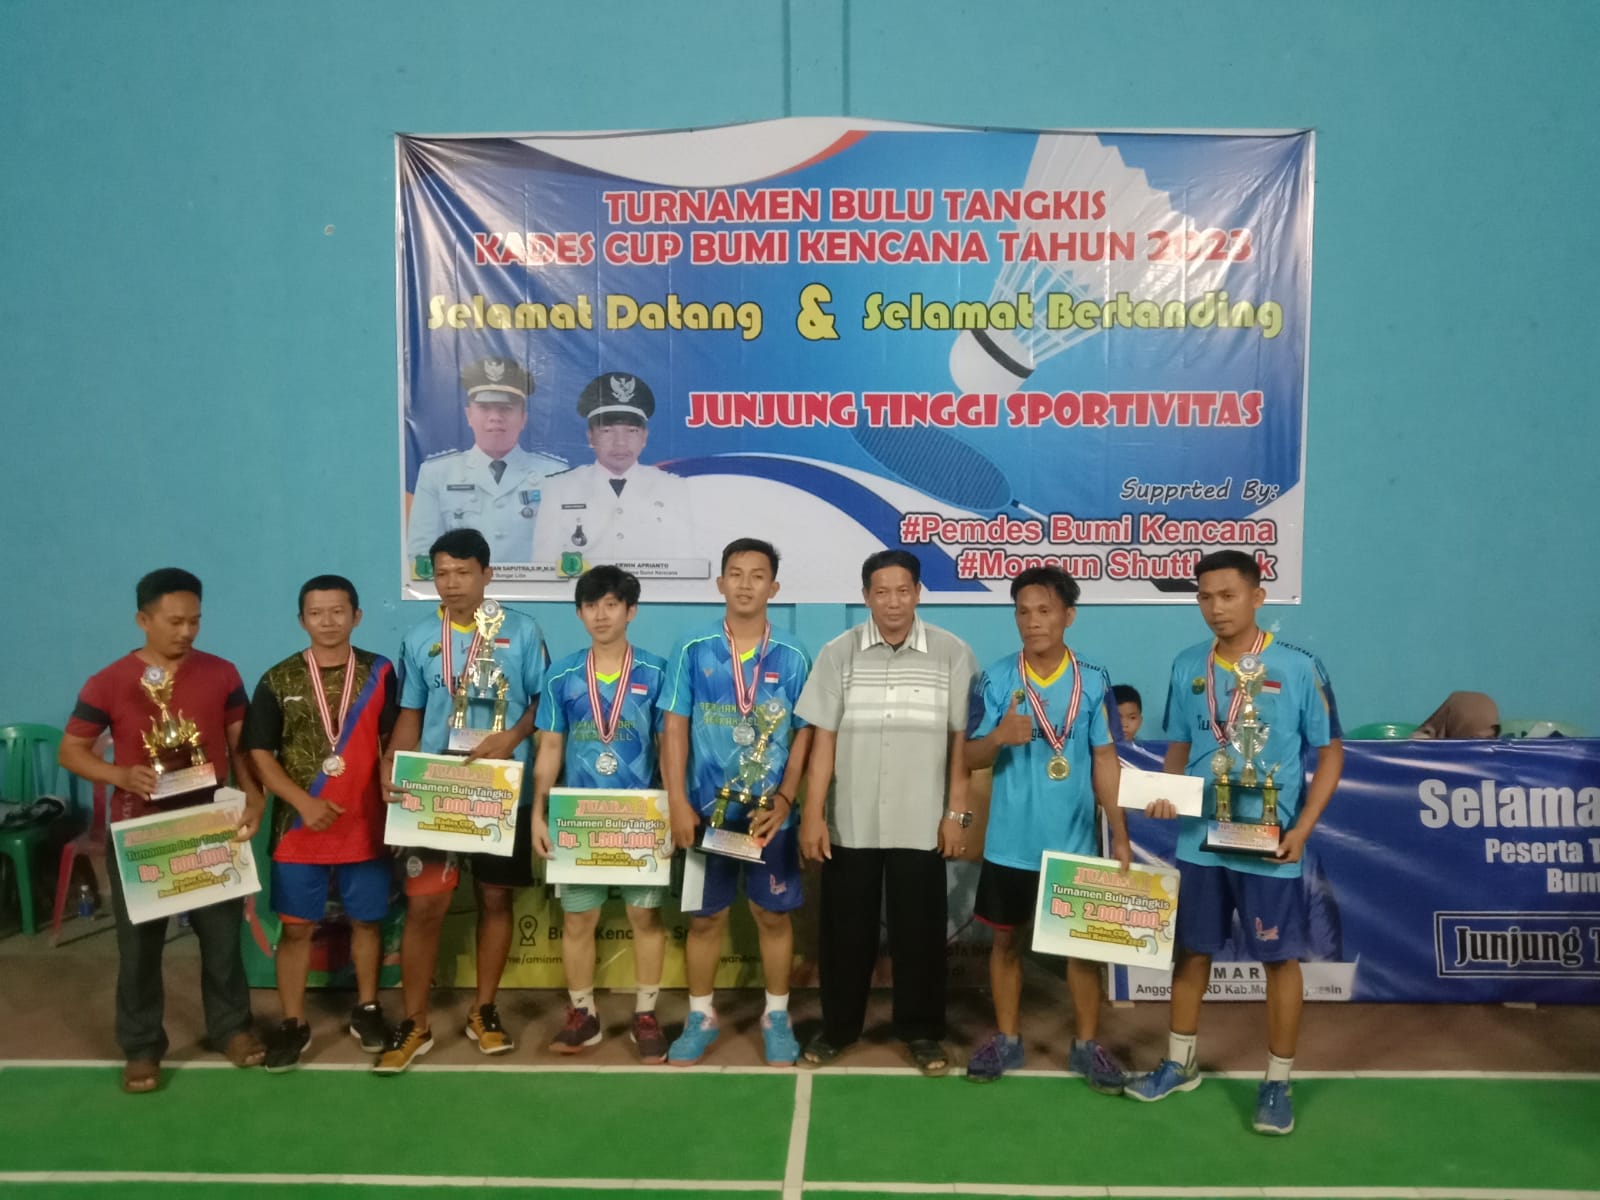 Turnamen Badminton Kades Bumi Kencana Cup Sudah Rampung, Ini Daftar Juara